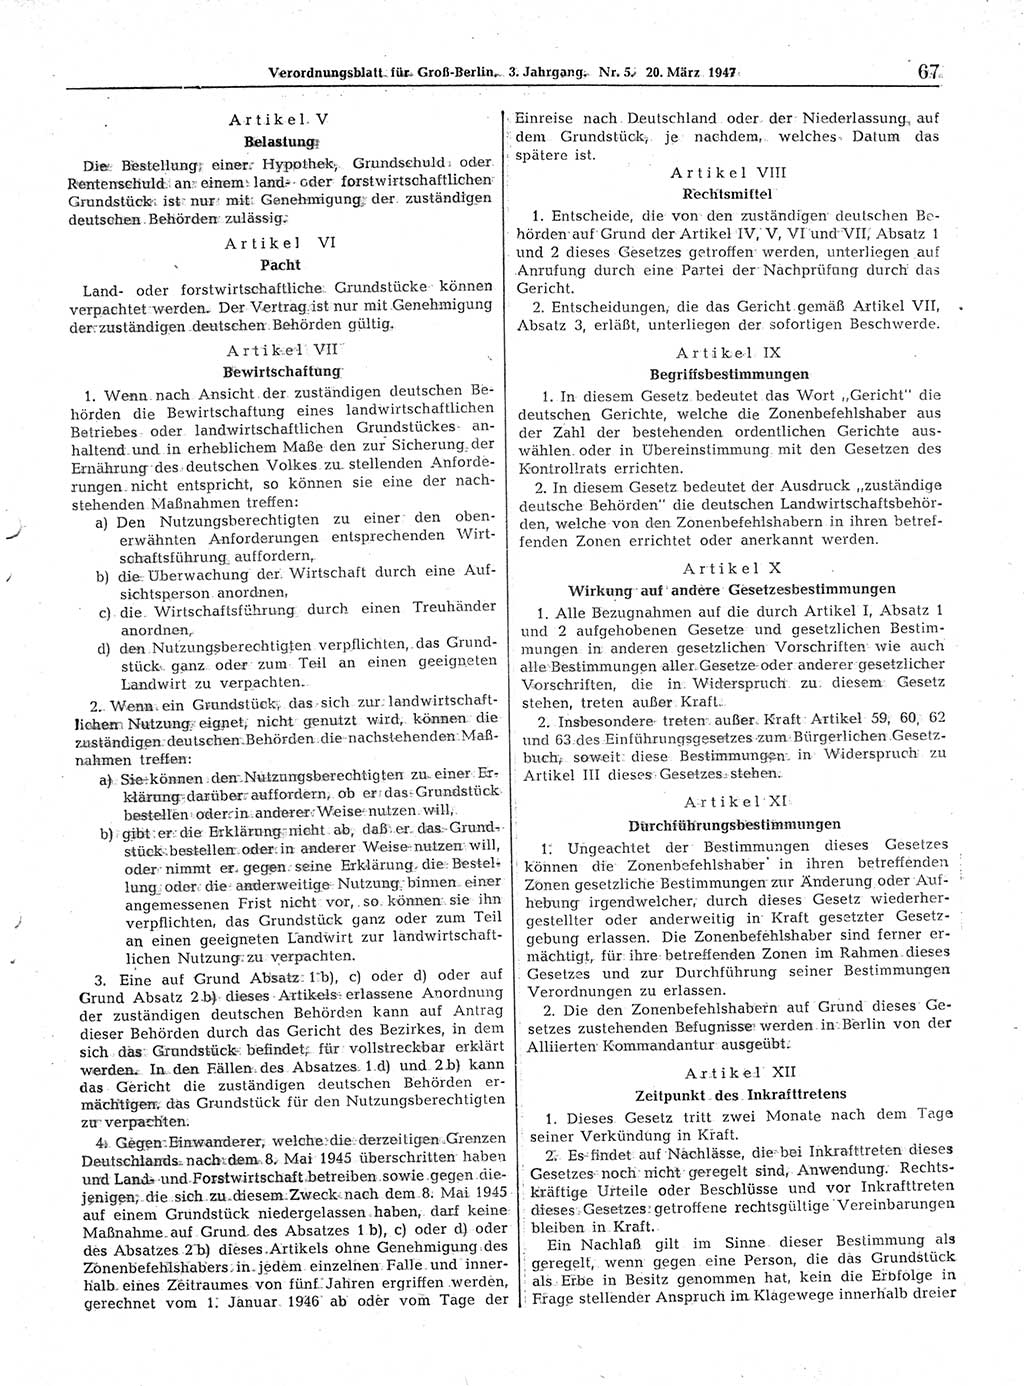 Verordnungsblatt (VOBl.) für Groß-Berlin 1947, Seite 67 (VOBl. Bln. 1947, S. 67)